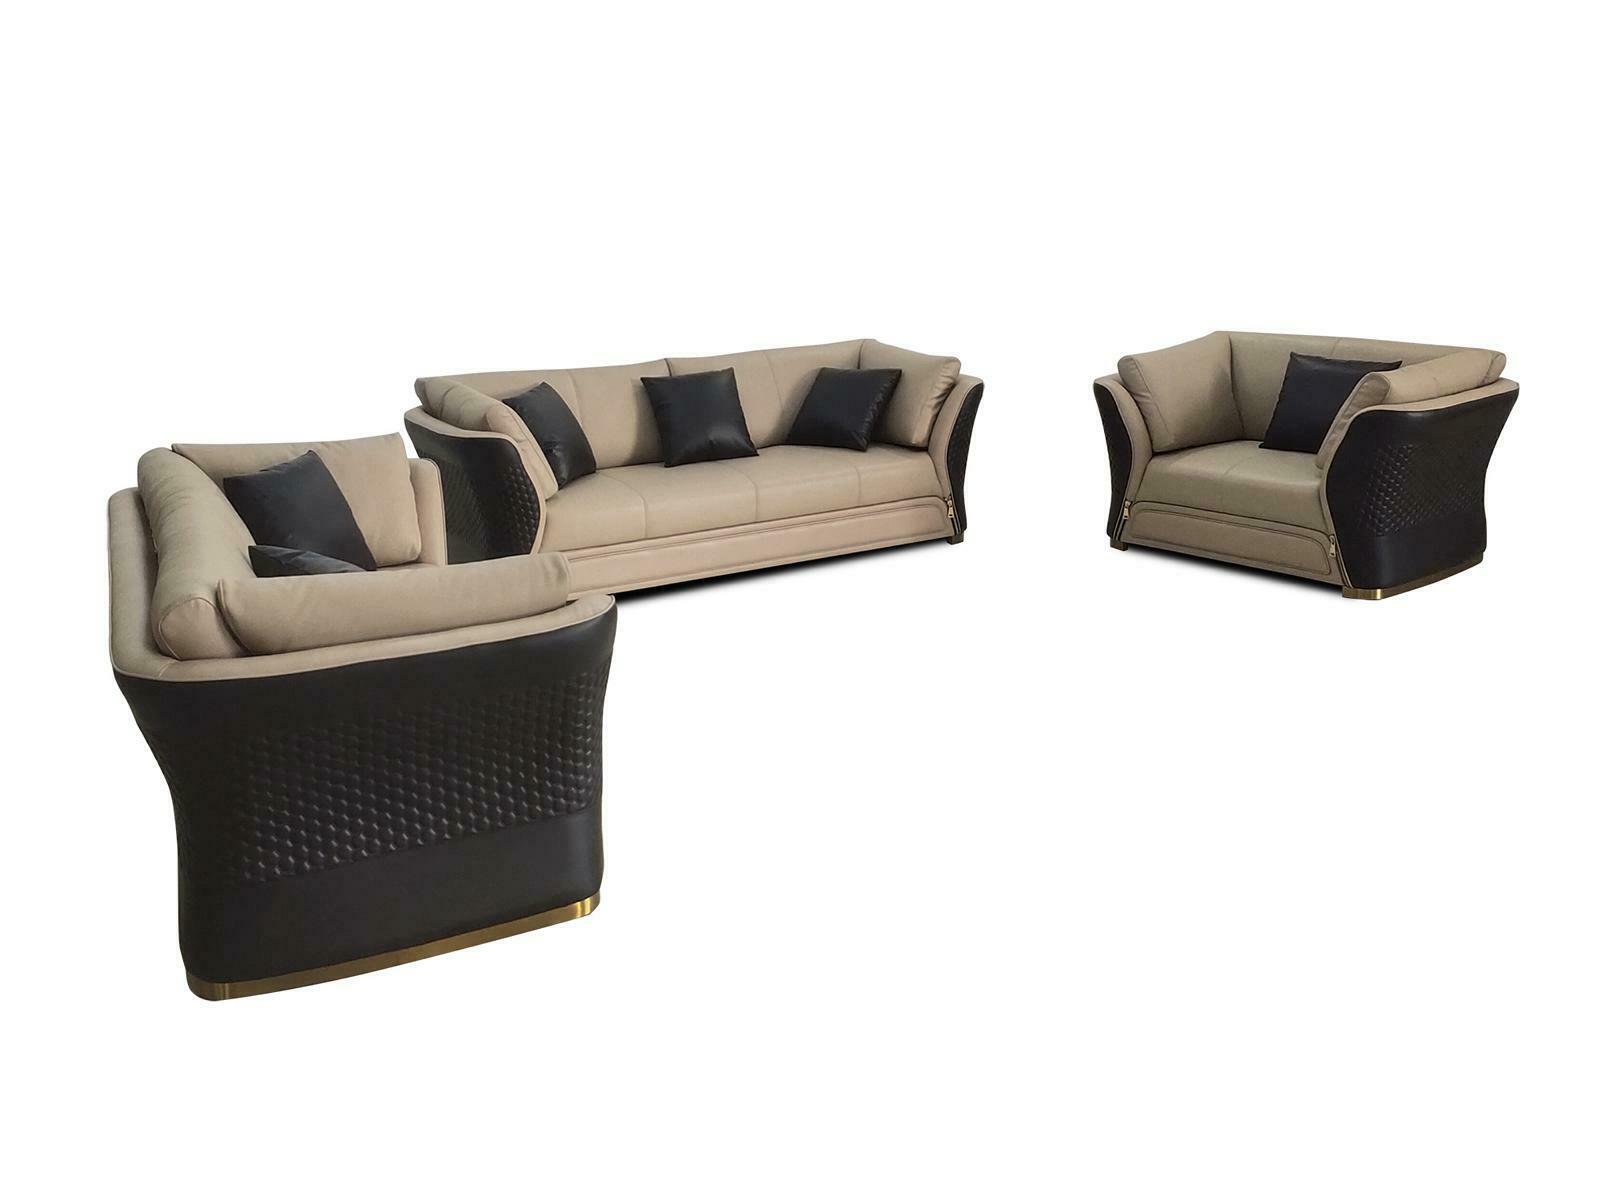 Sofagarnitur 3 1 Sitzer Set Design Sofa Polster Couchen Couch Modern